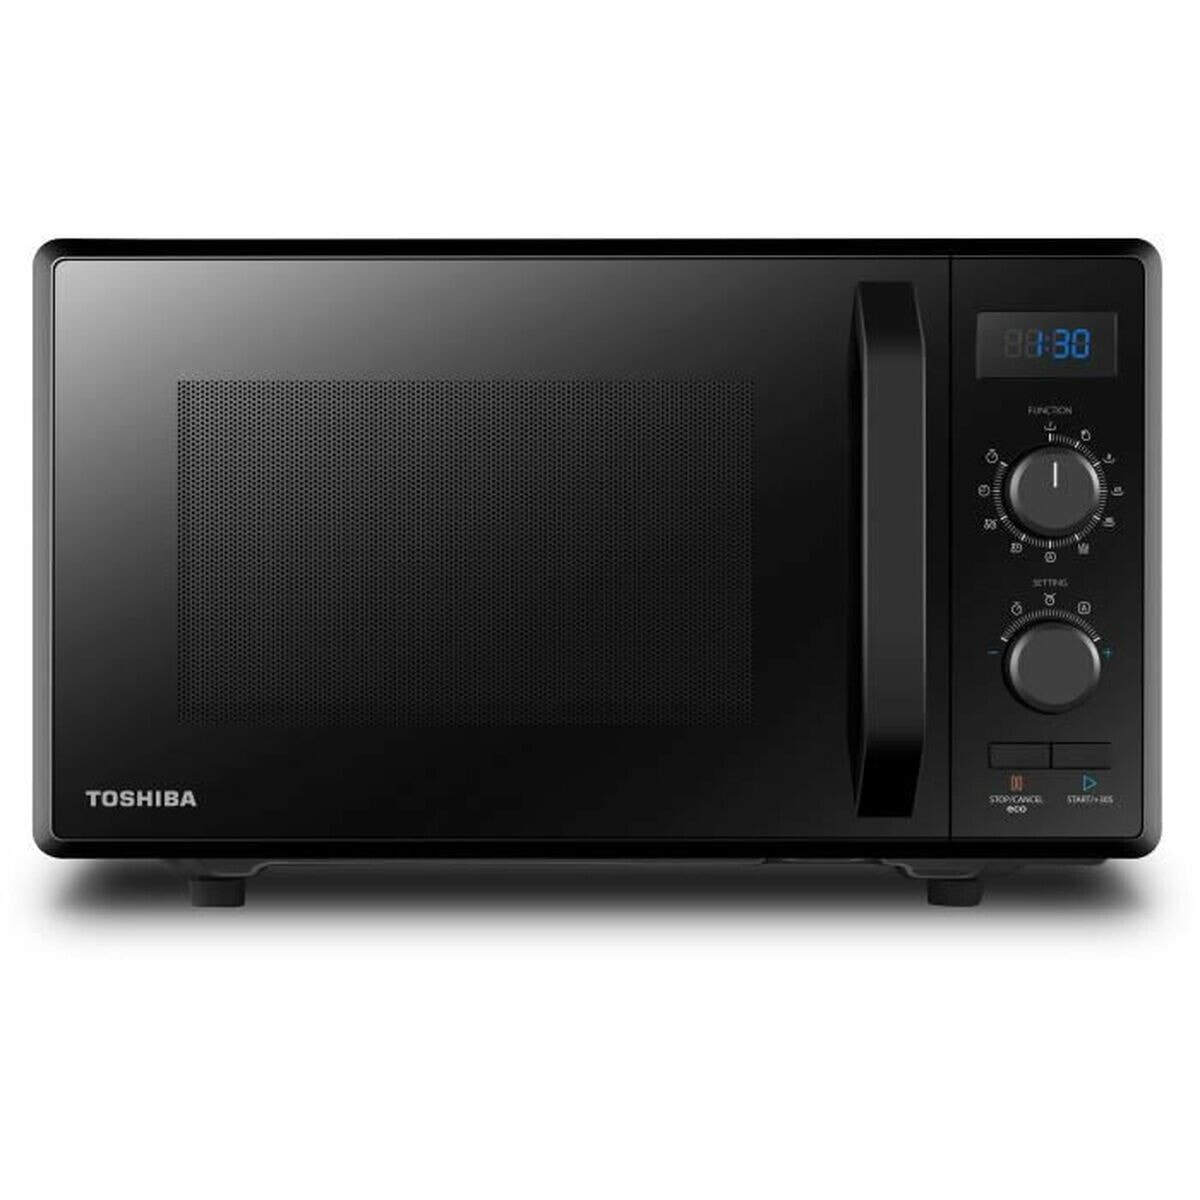 Microwave with Grill Toshiba 900 W 23 L Black 900 W 23 L